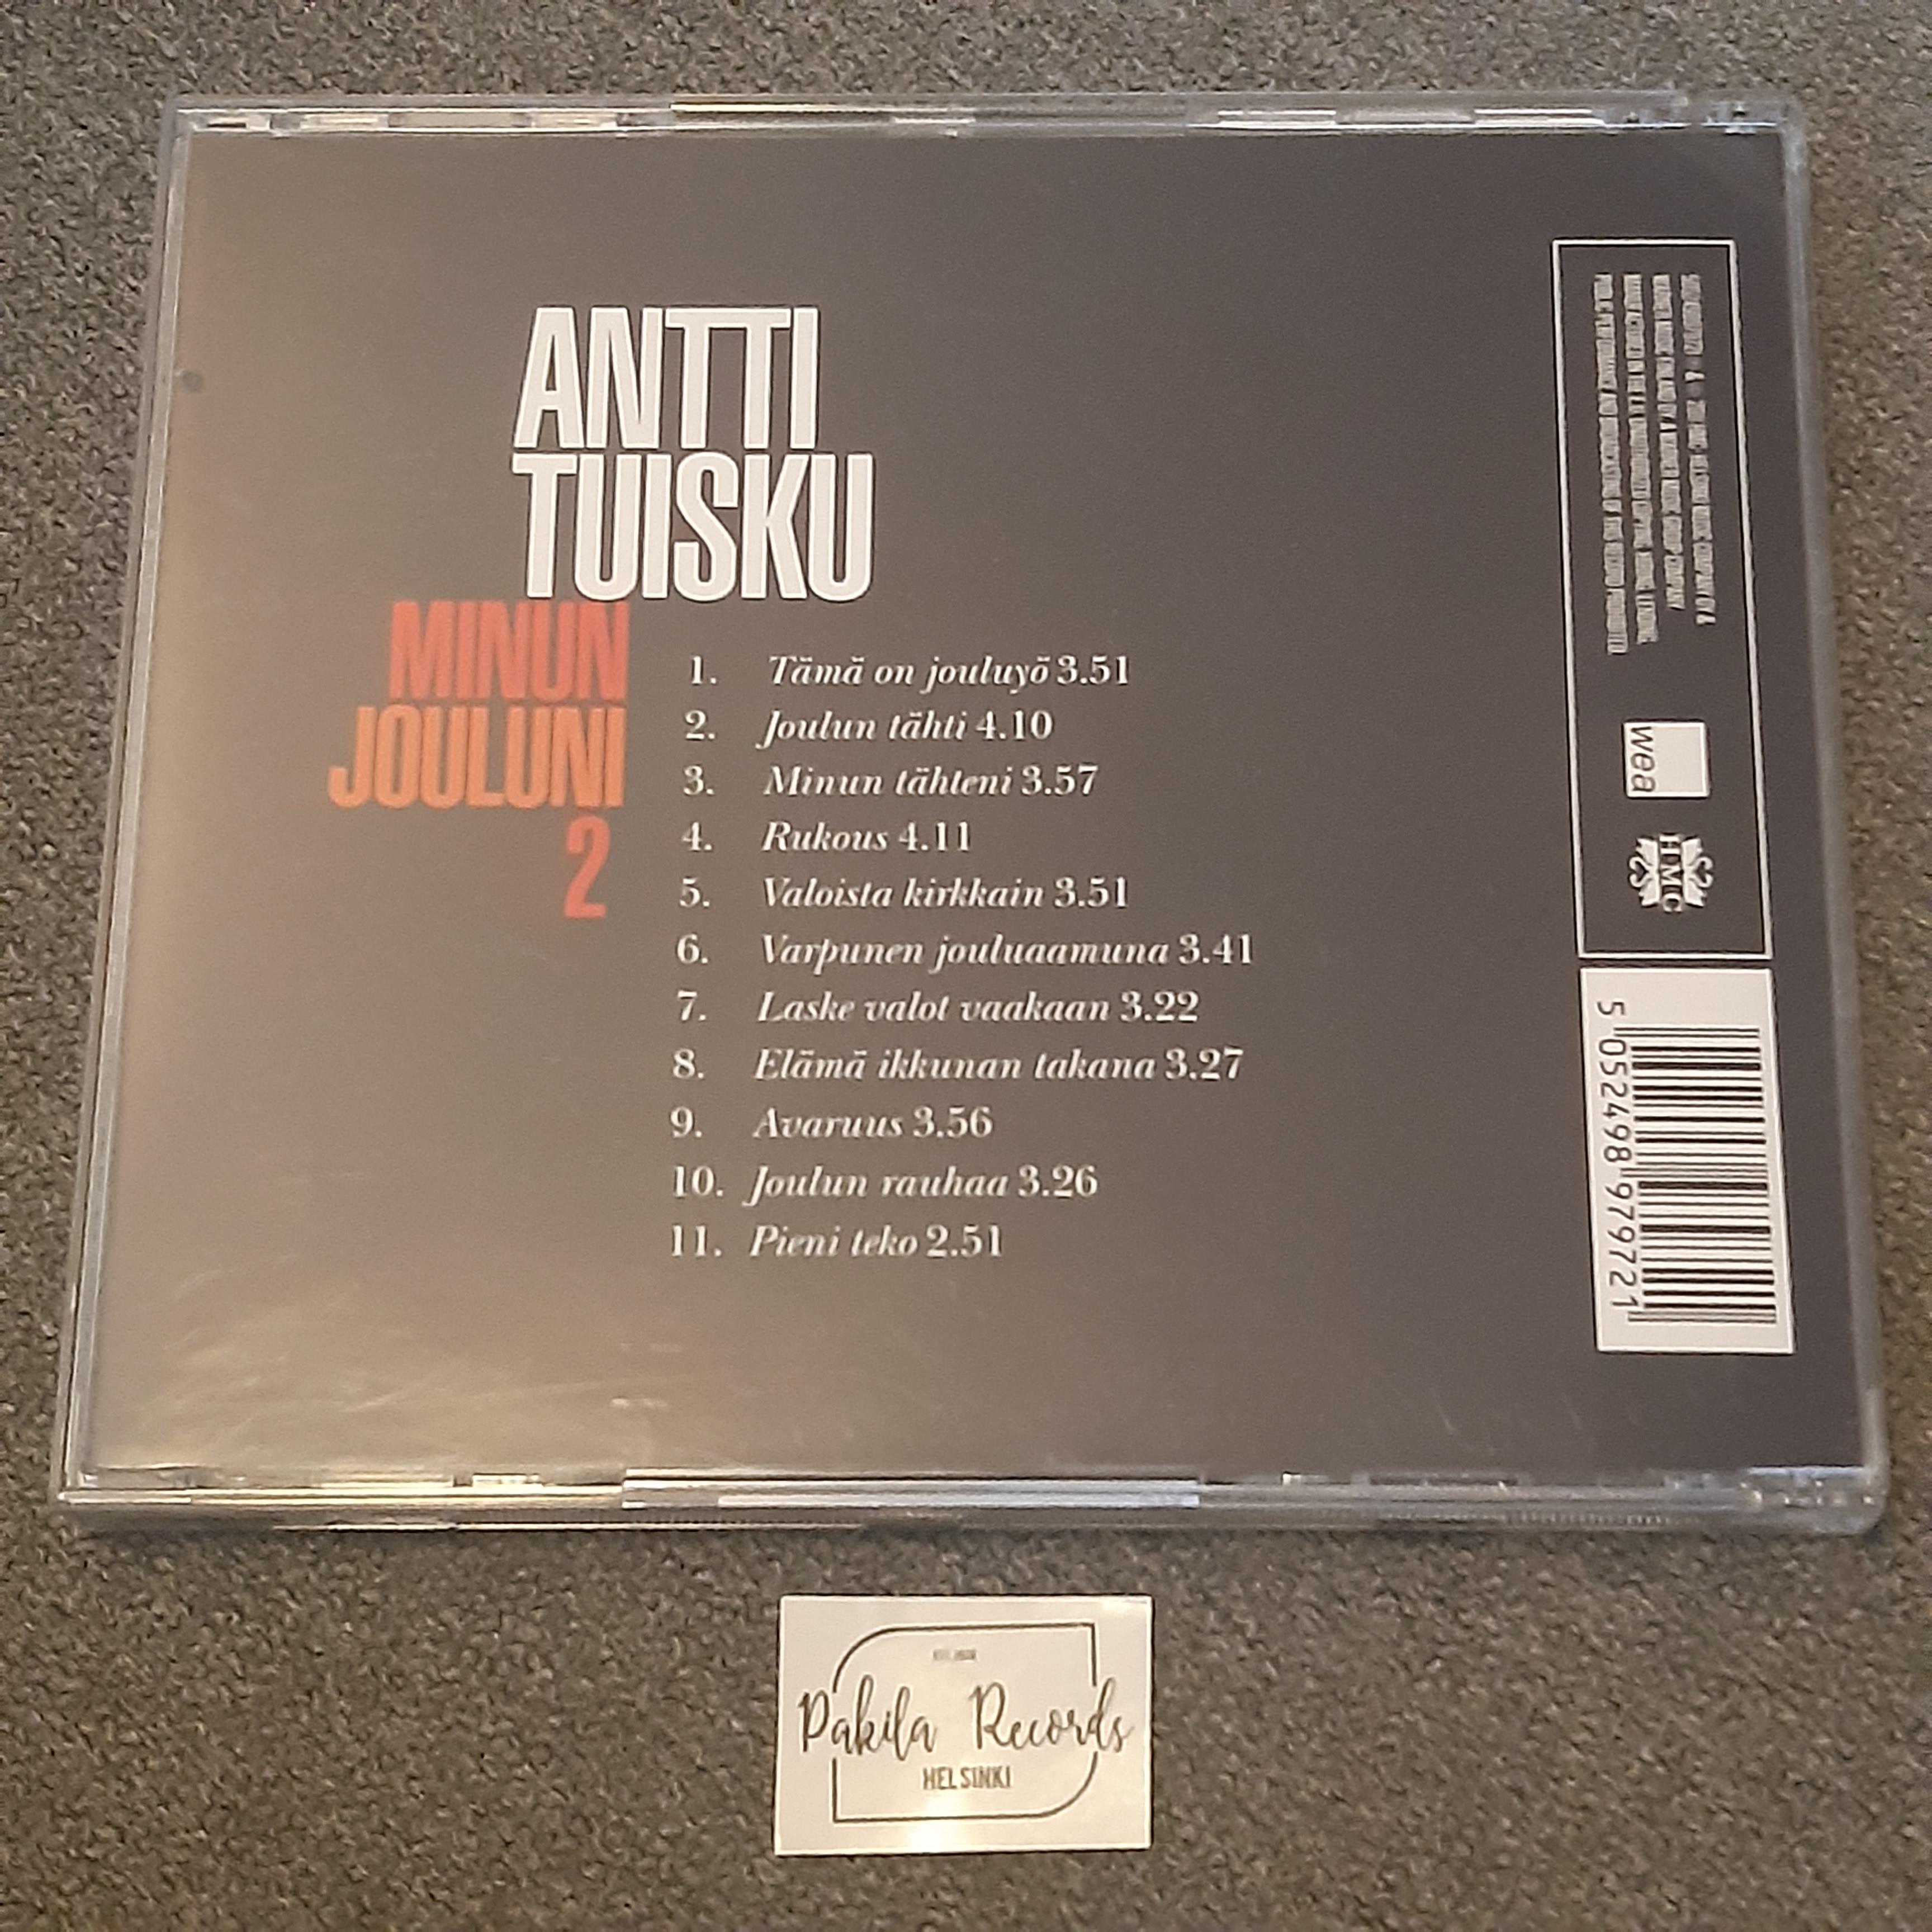 Antti Tuisku - Minun Jouluni 2 - CD (käytetty)